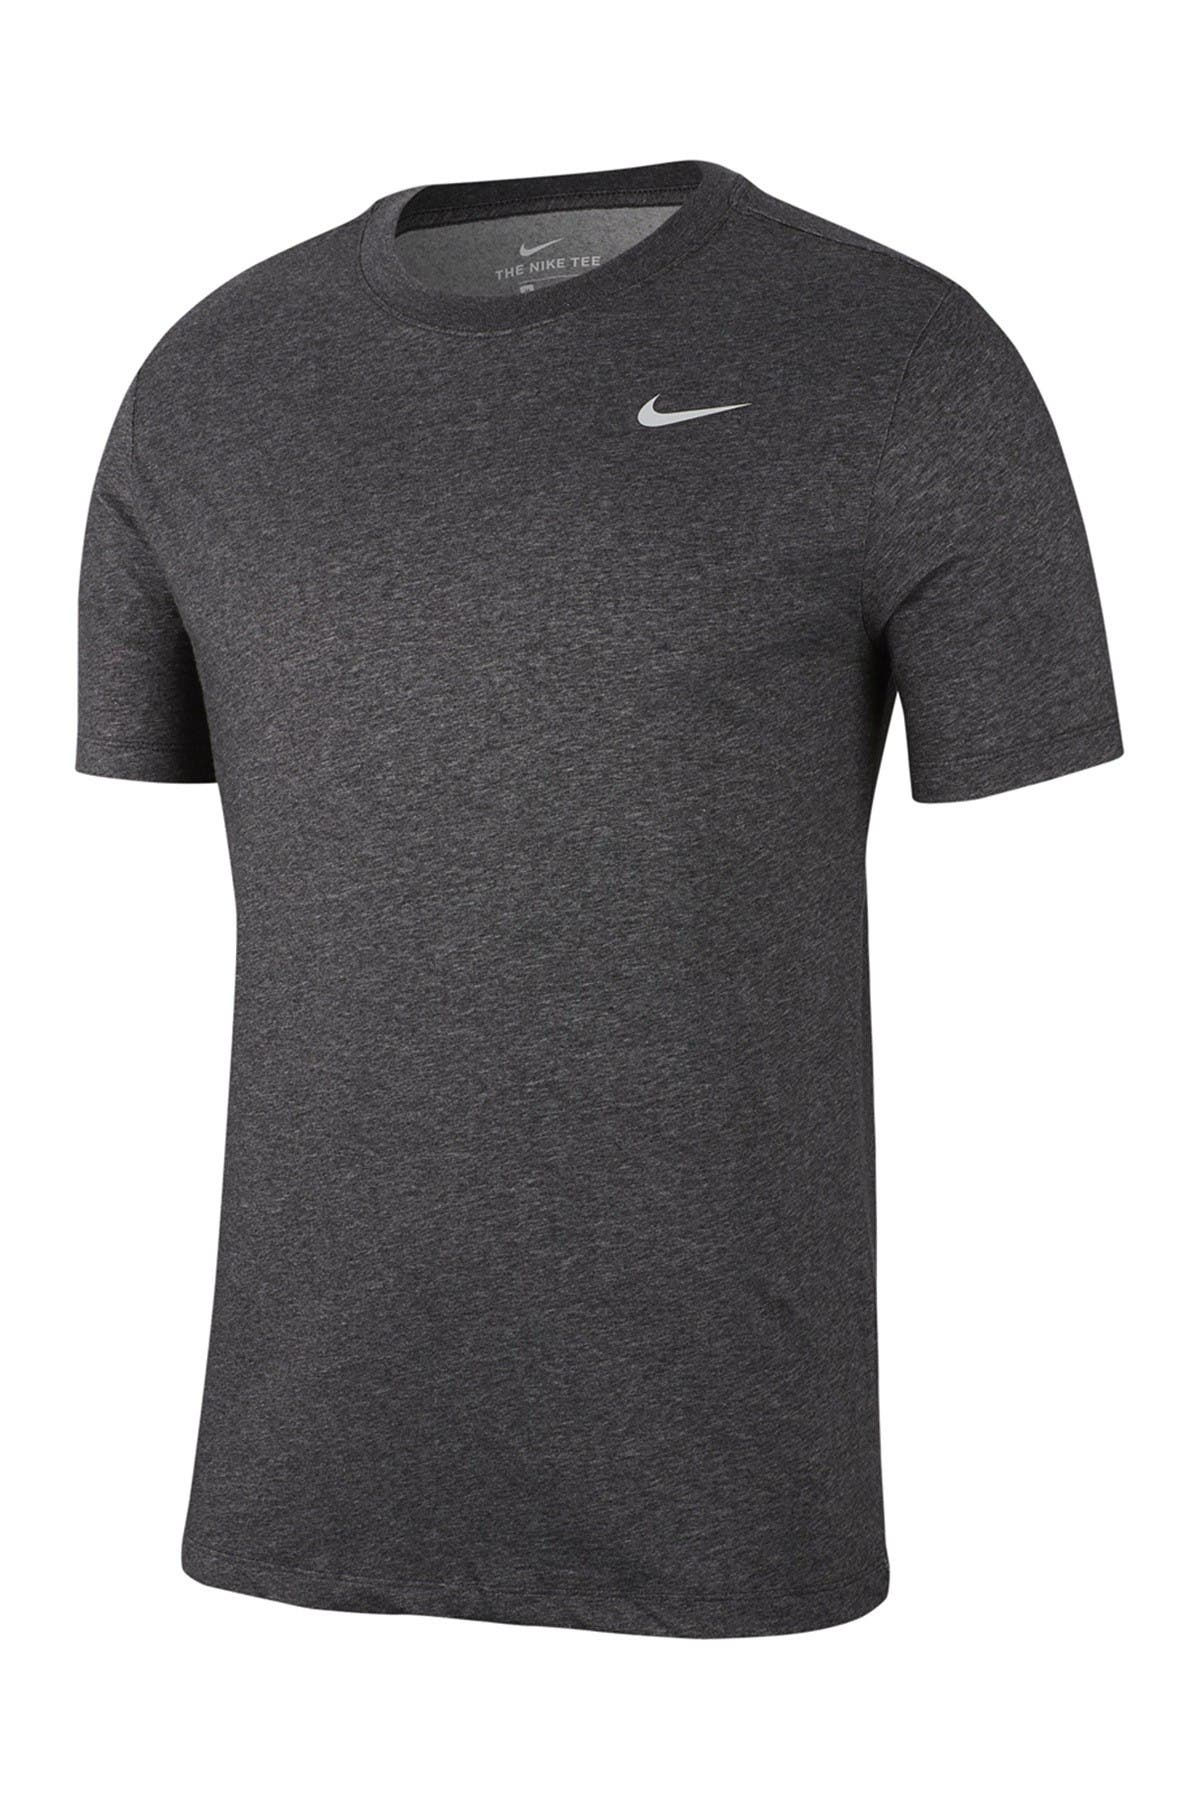 Nike Dri-fit Crew Training T-shirt In Medium Grey2